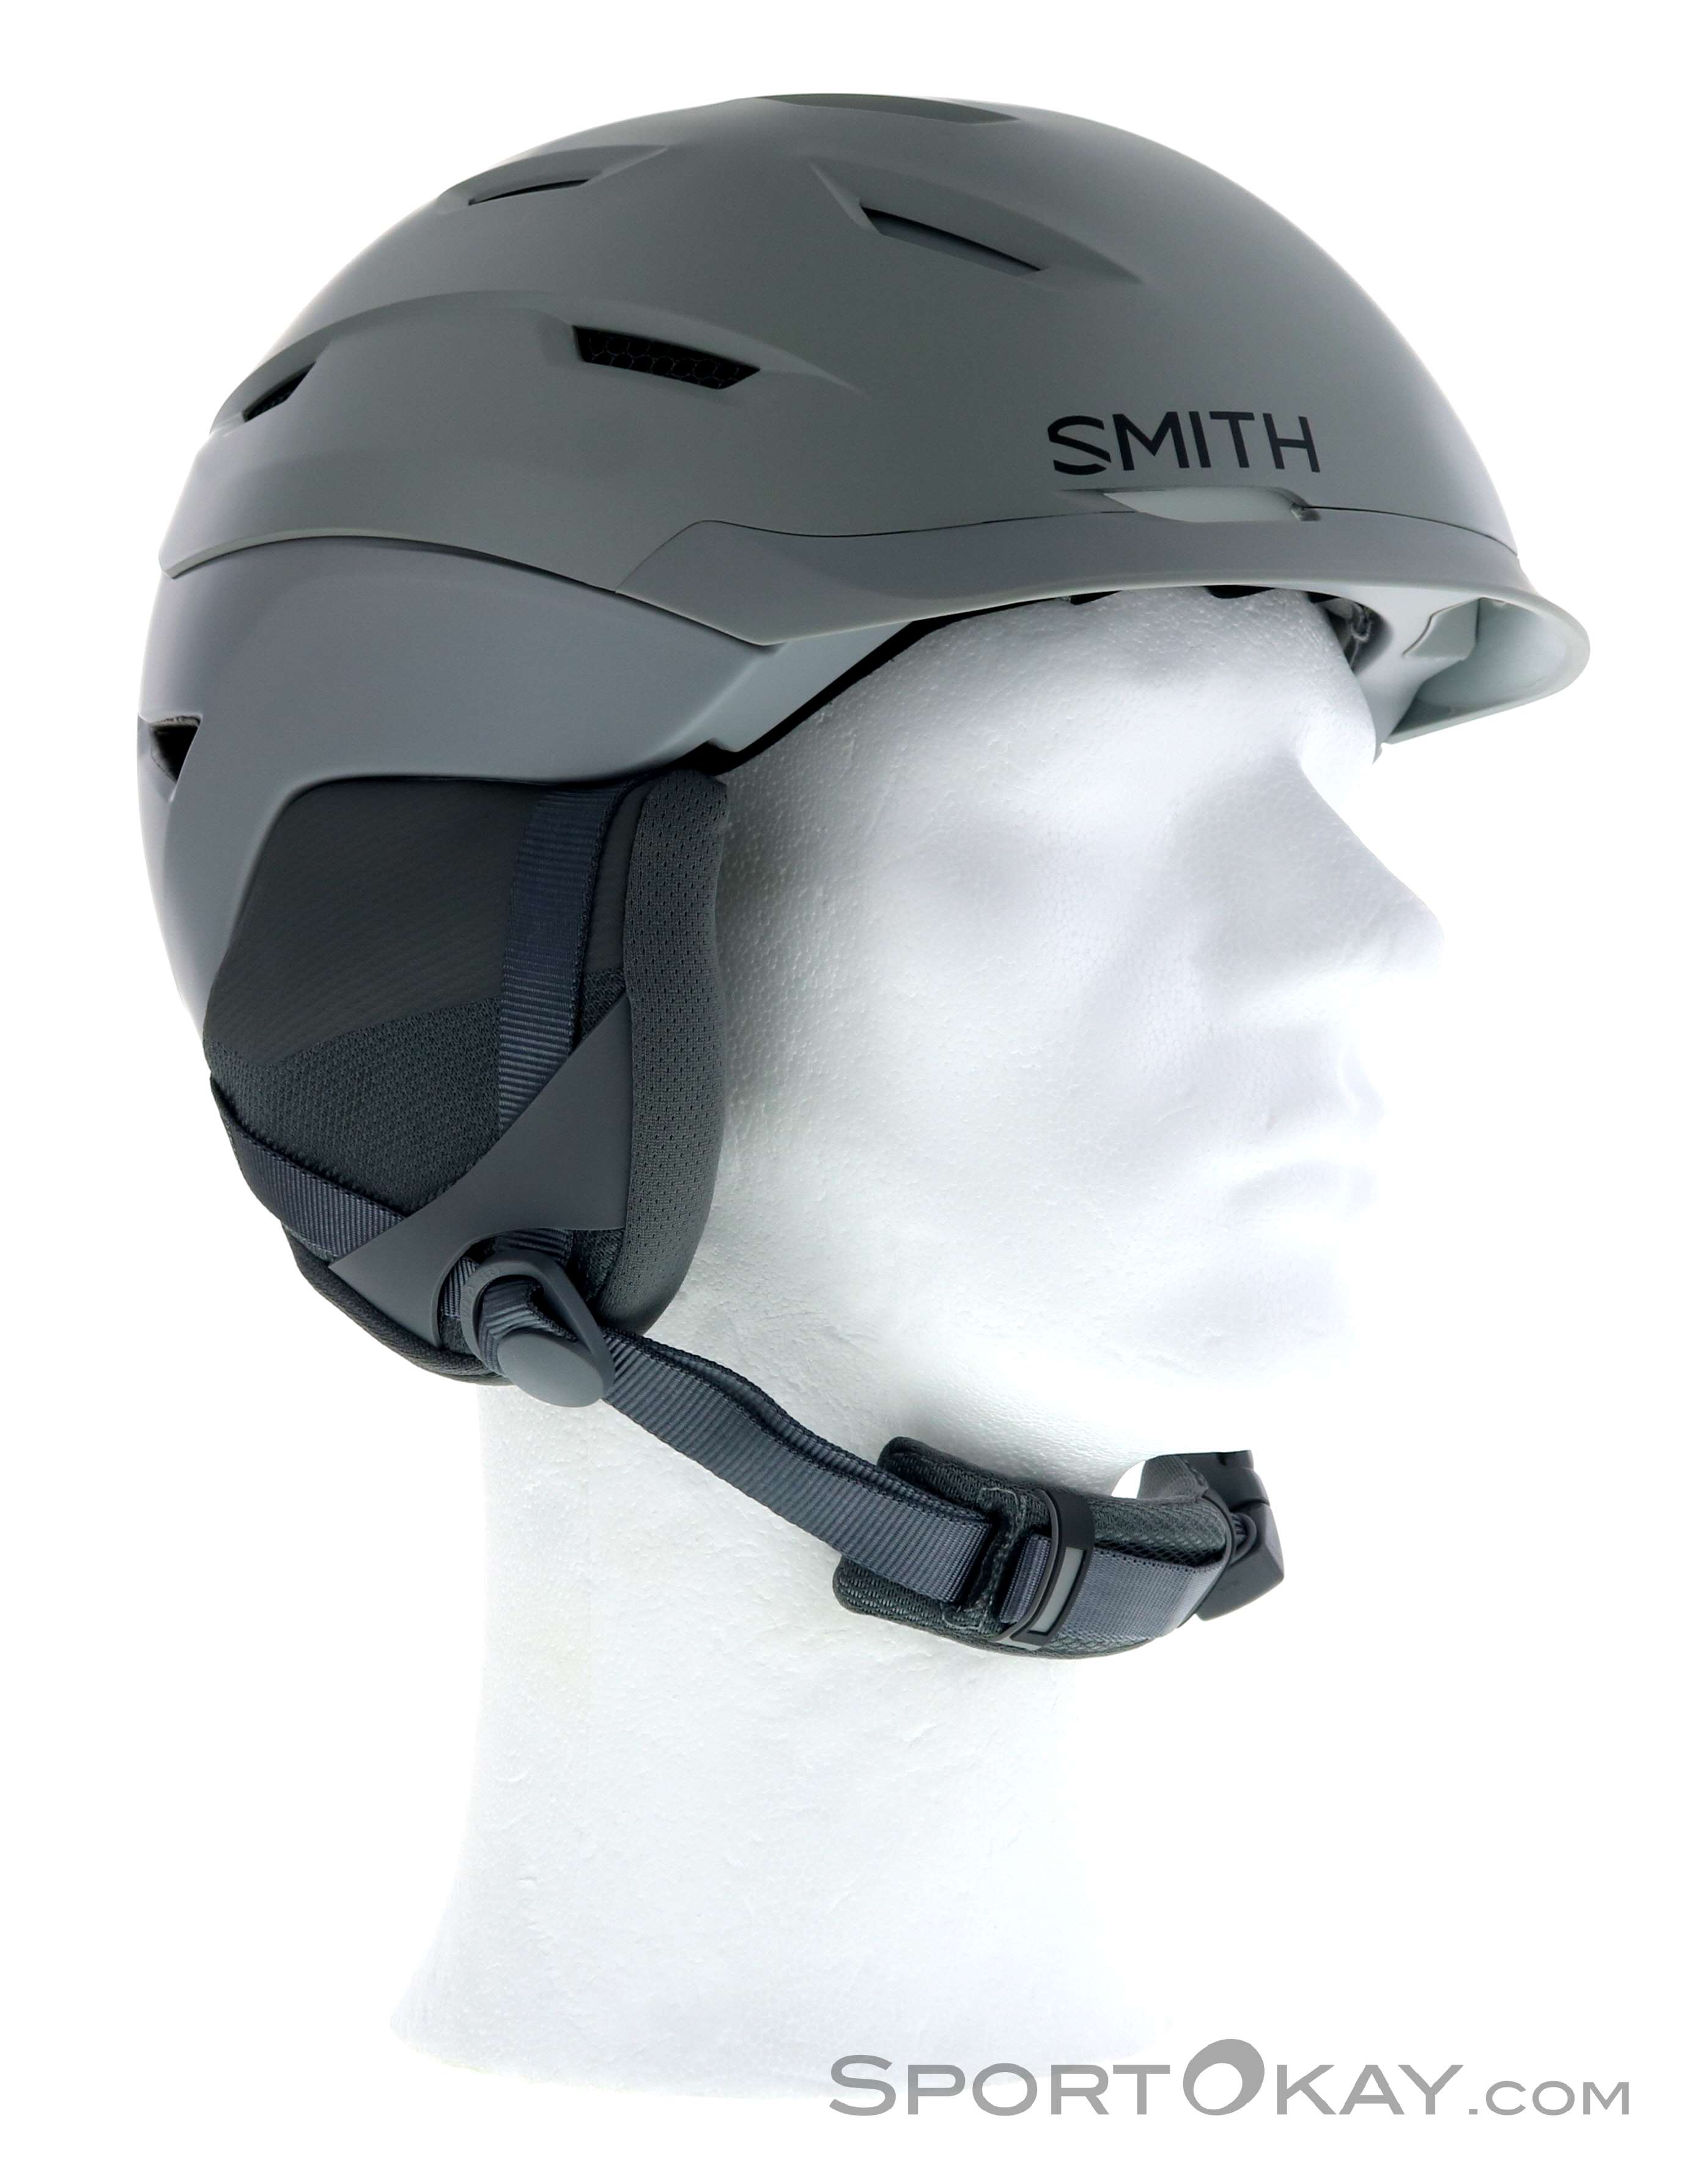 Smith Level MIPS Mens Ski Helmet - Ski Helmets - Ski Helmets